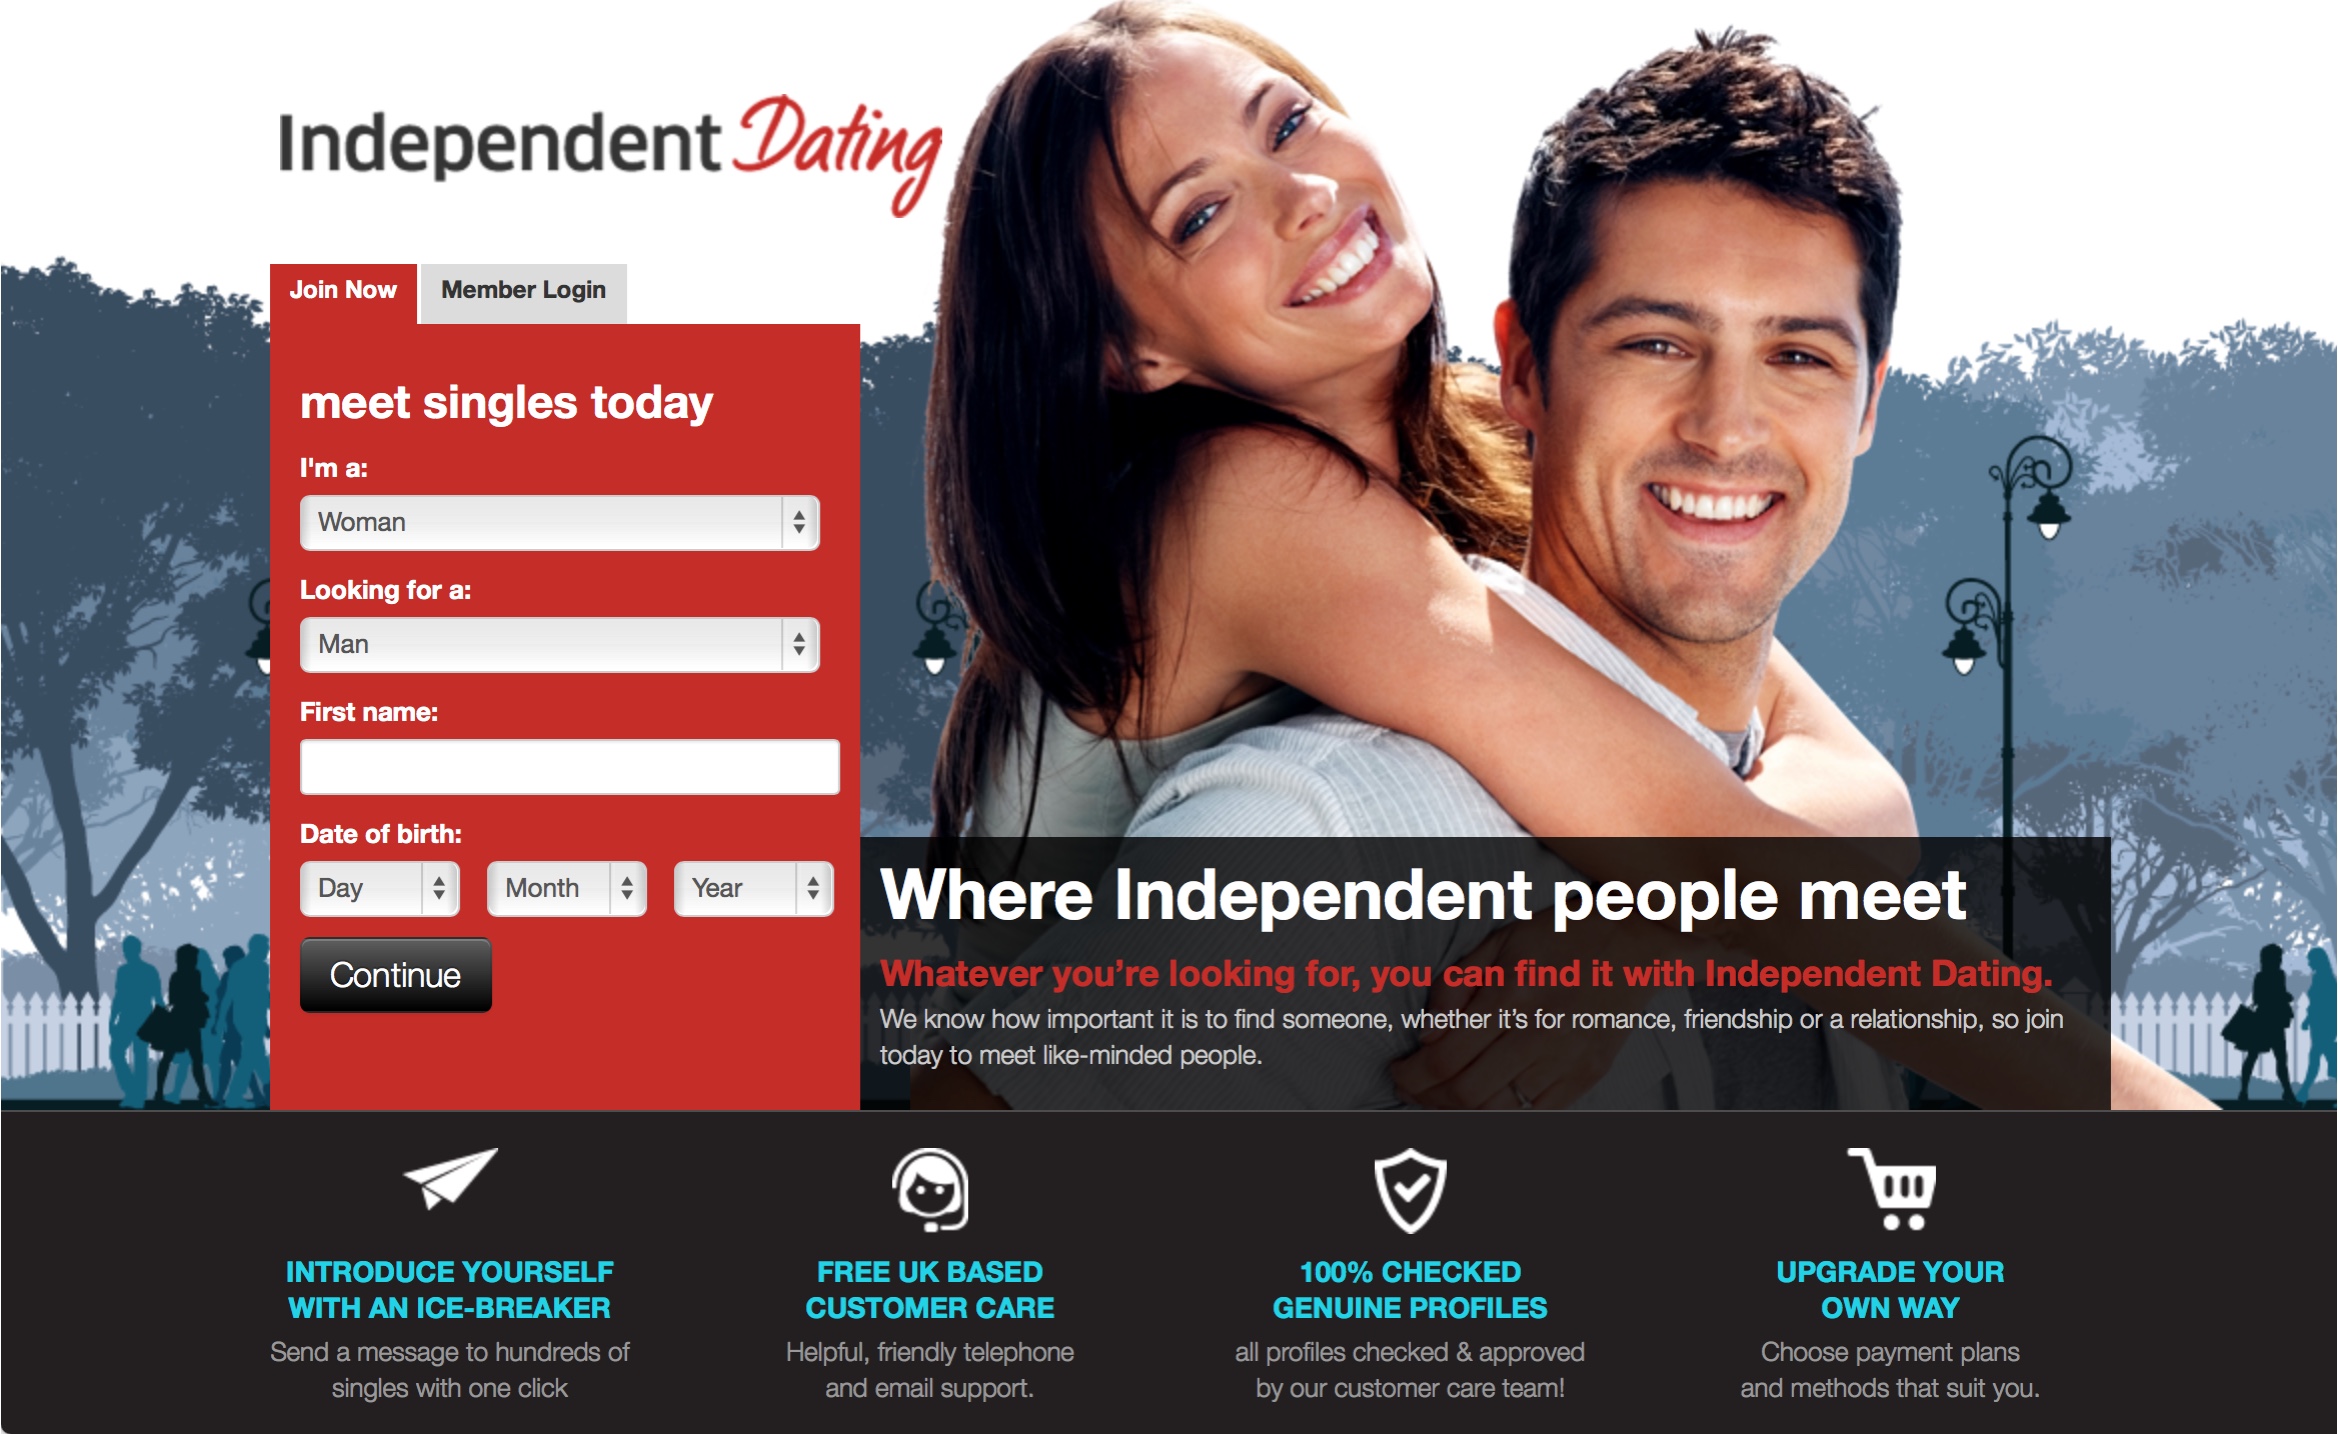 Independent Dating website design